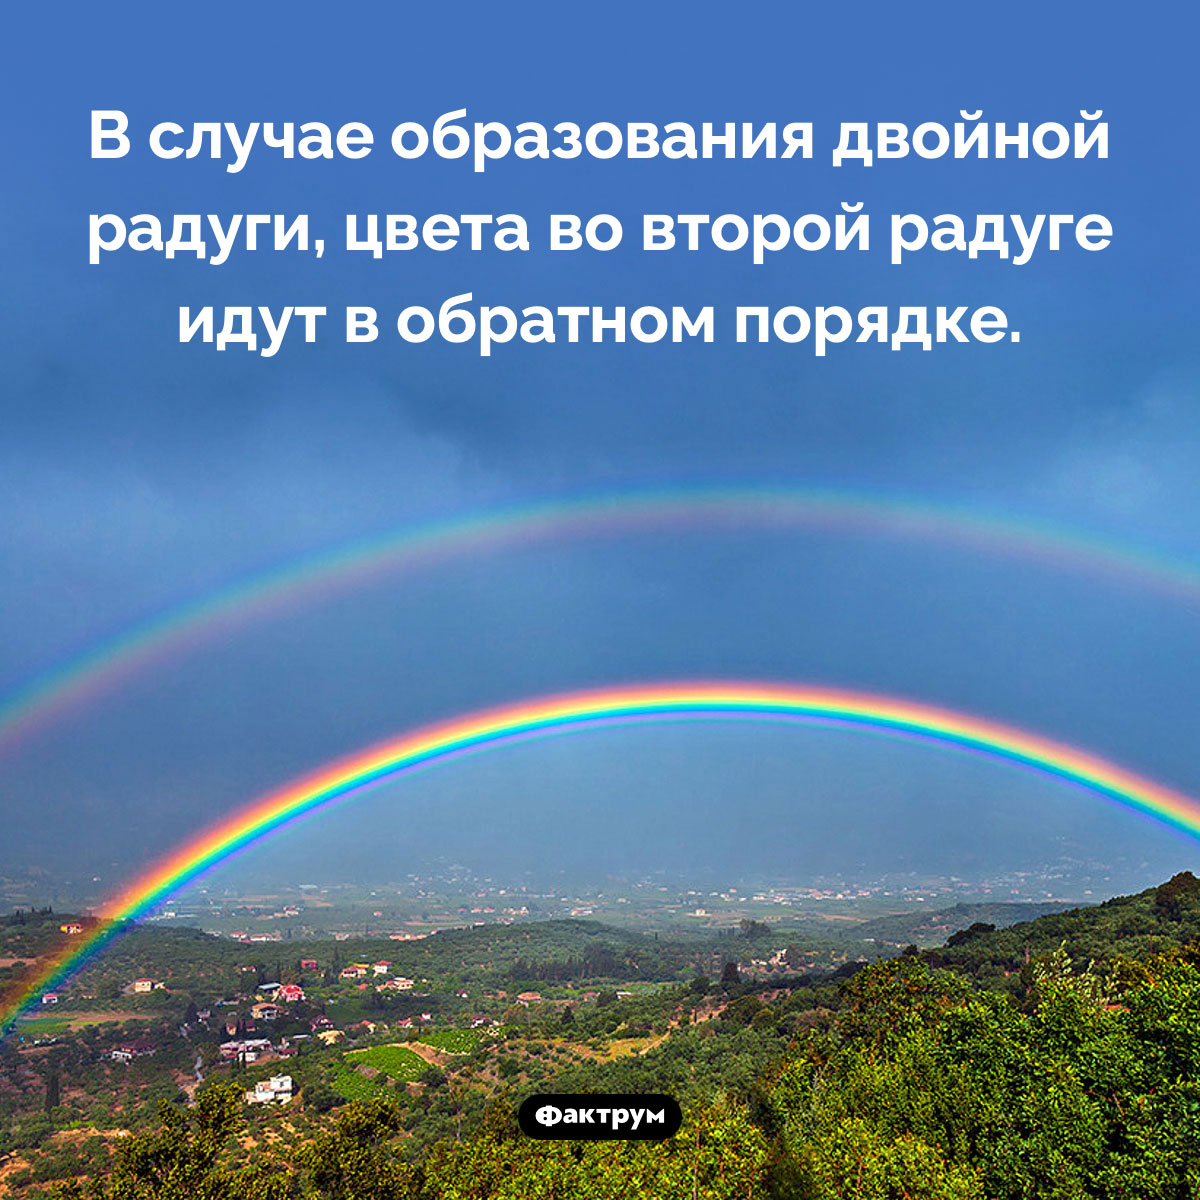 В двойной радуге вторая радуга зеркальна по отношению к первой. В случае образования двойной радуги, цвета во второй радуге идут в обратном порядке.